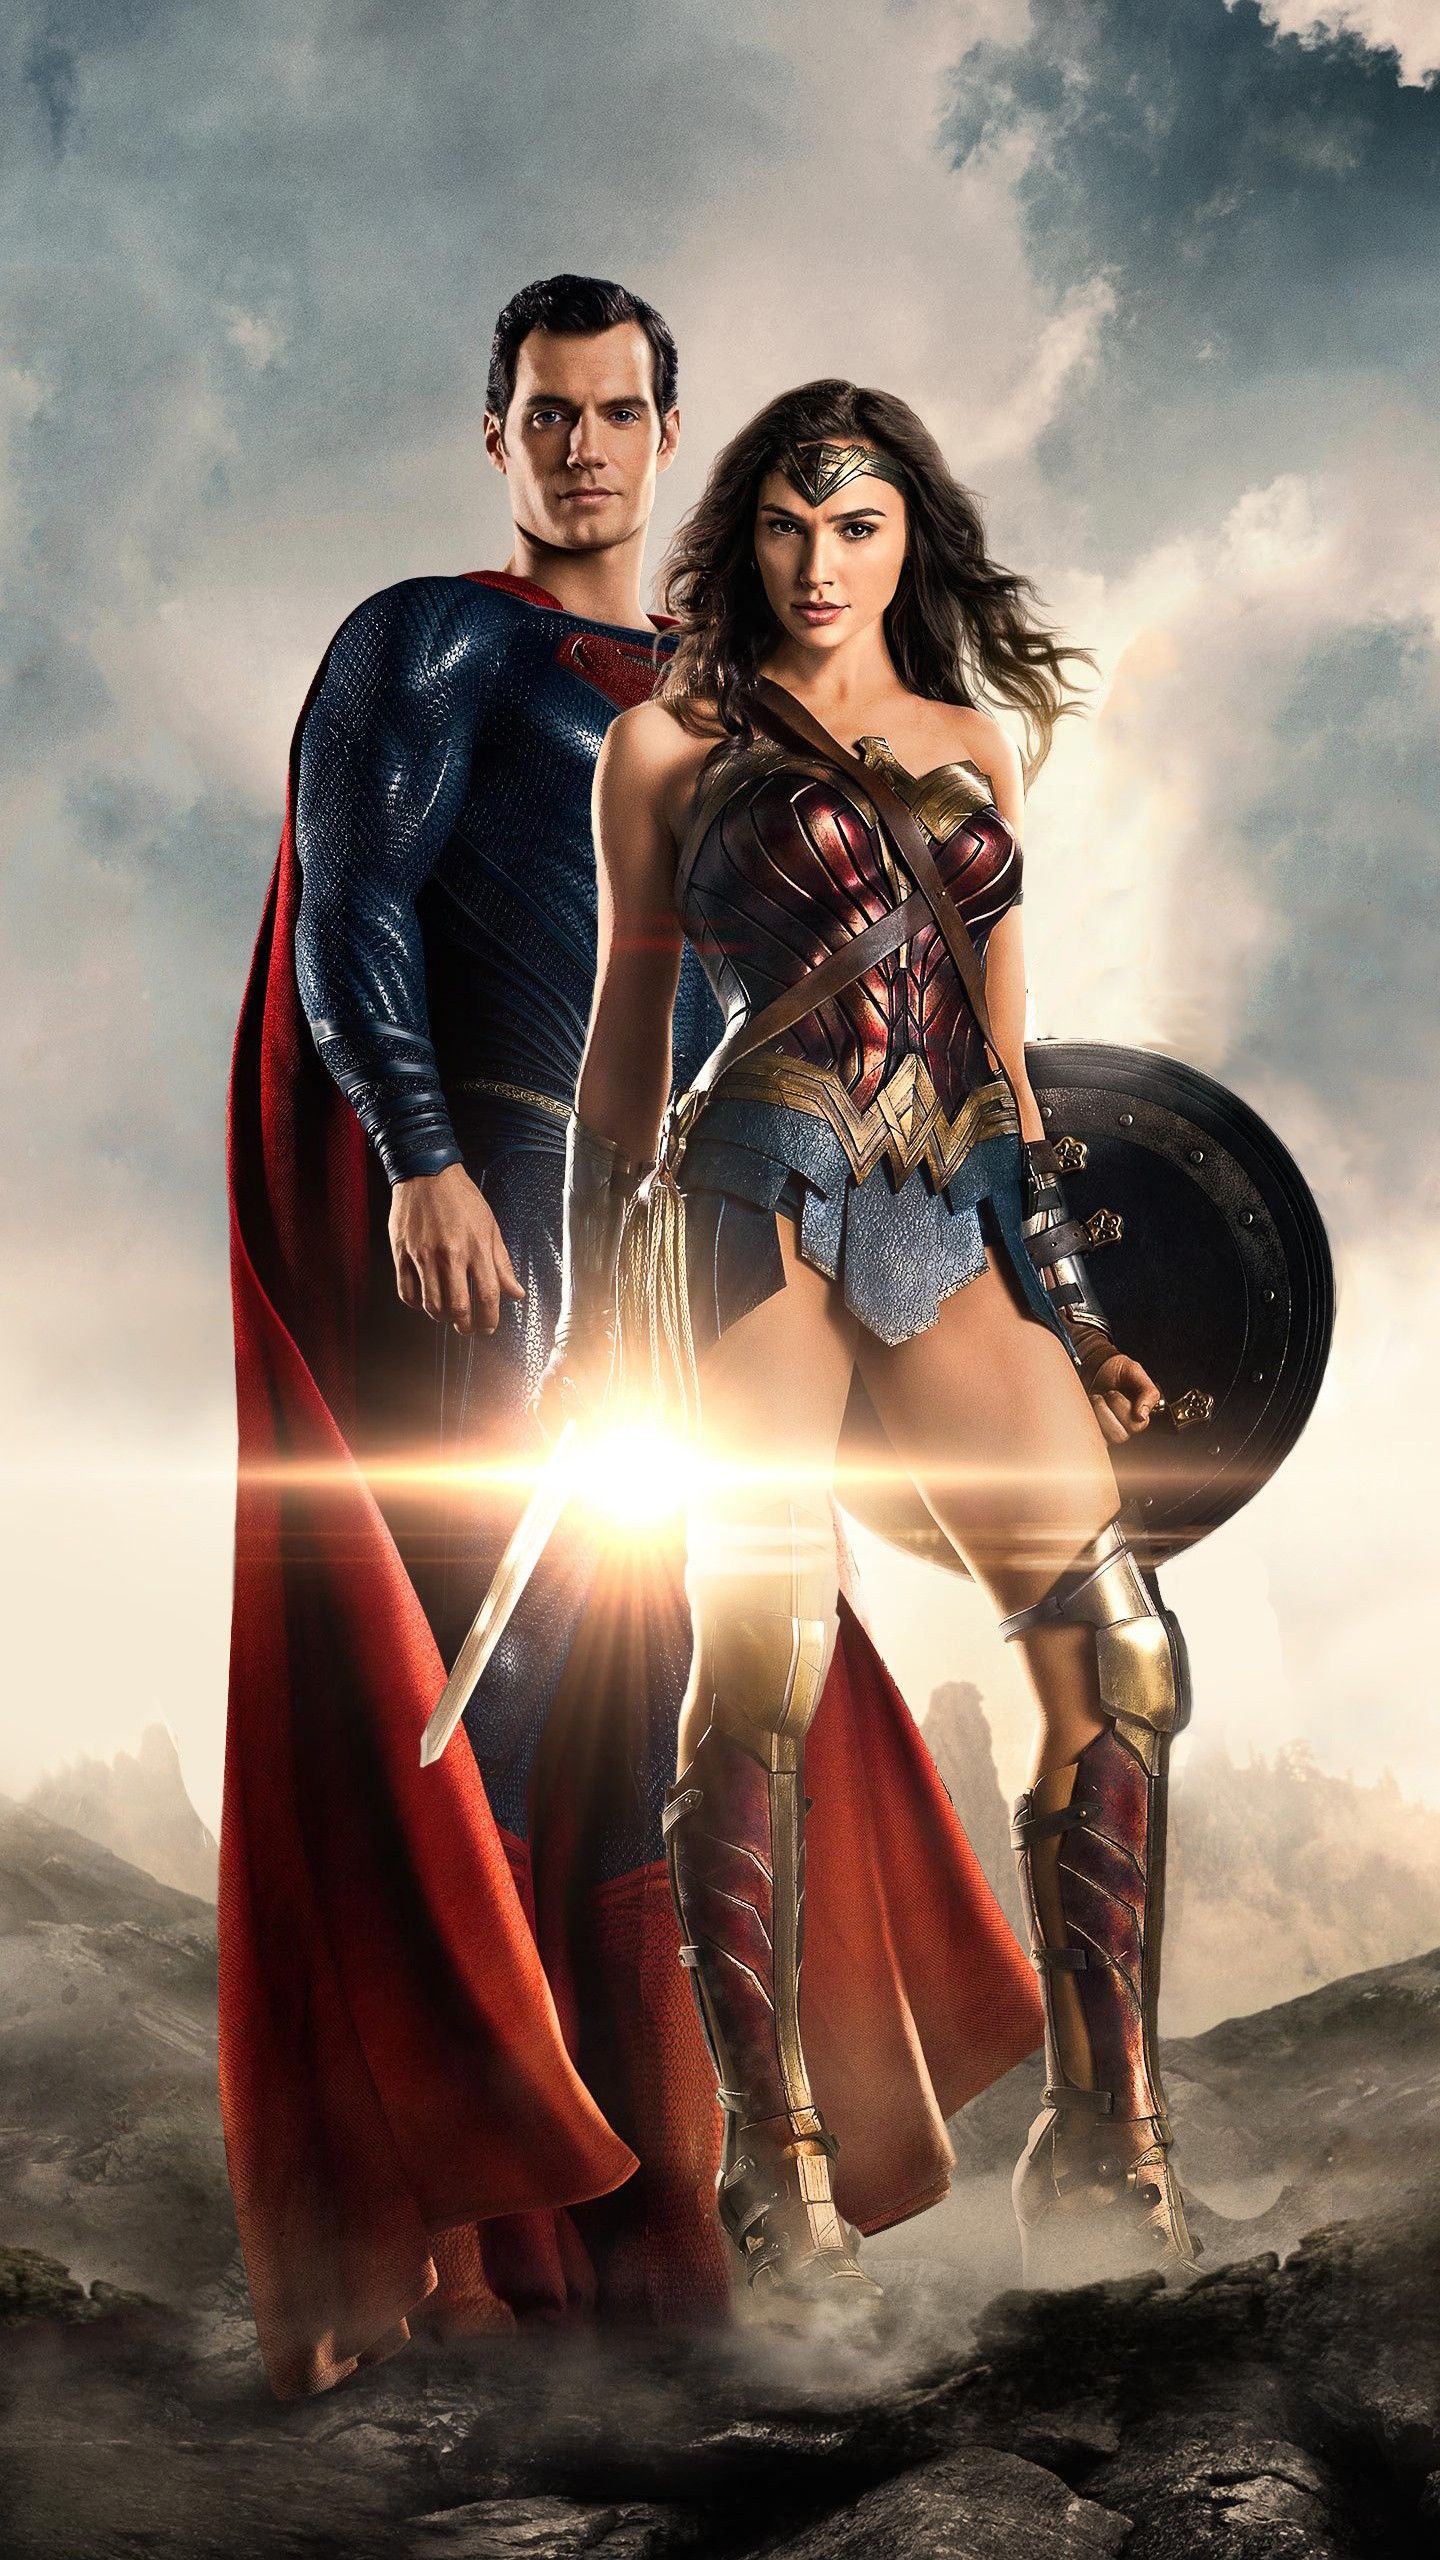 Superman Wonder Woman in Justice League 4K Wallpaper. HD